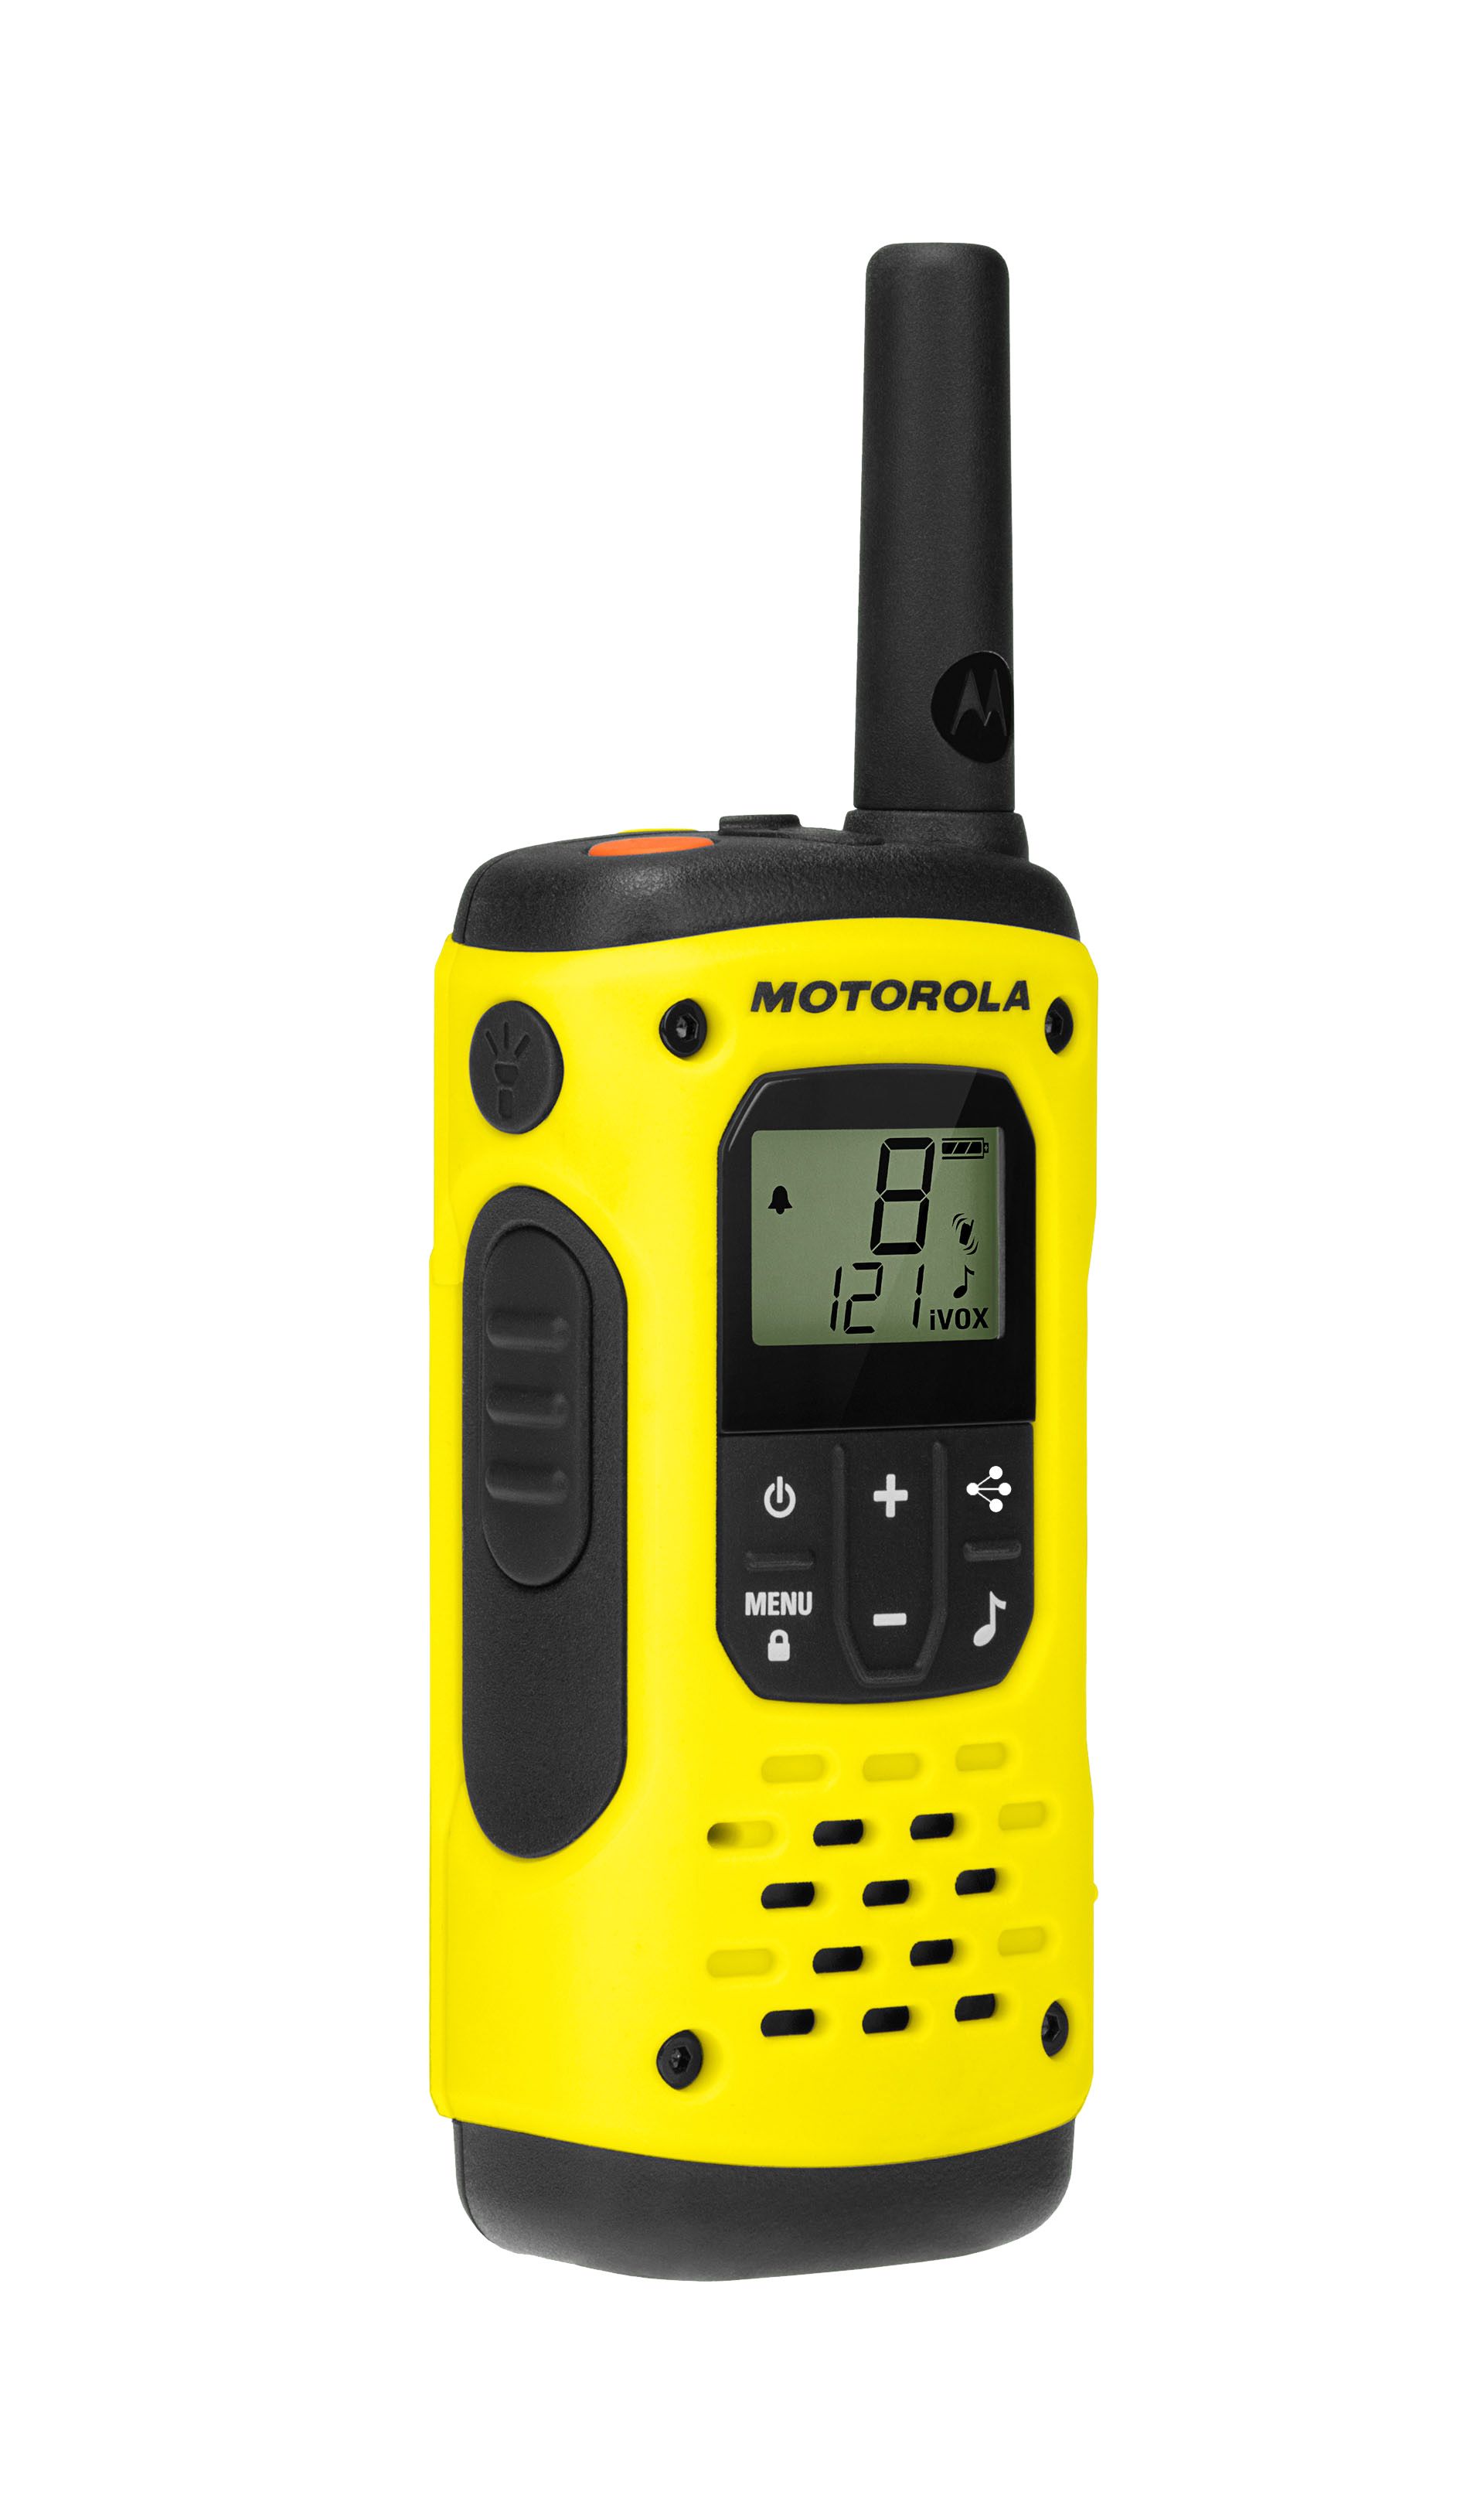 Qu'est-ce qu'un talkie walkie professionnel avec licence ?